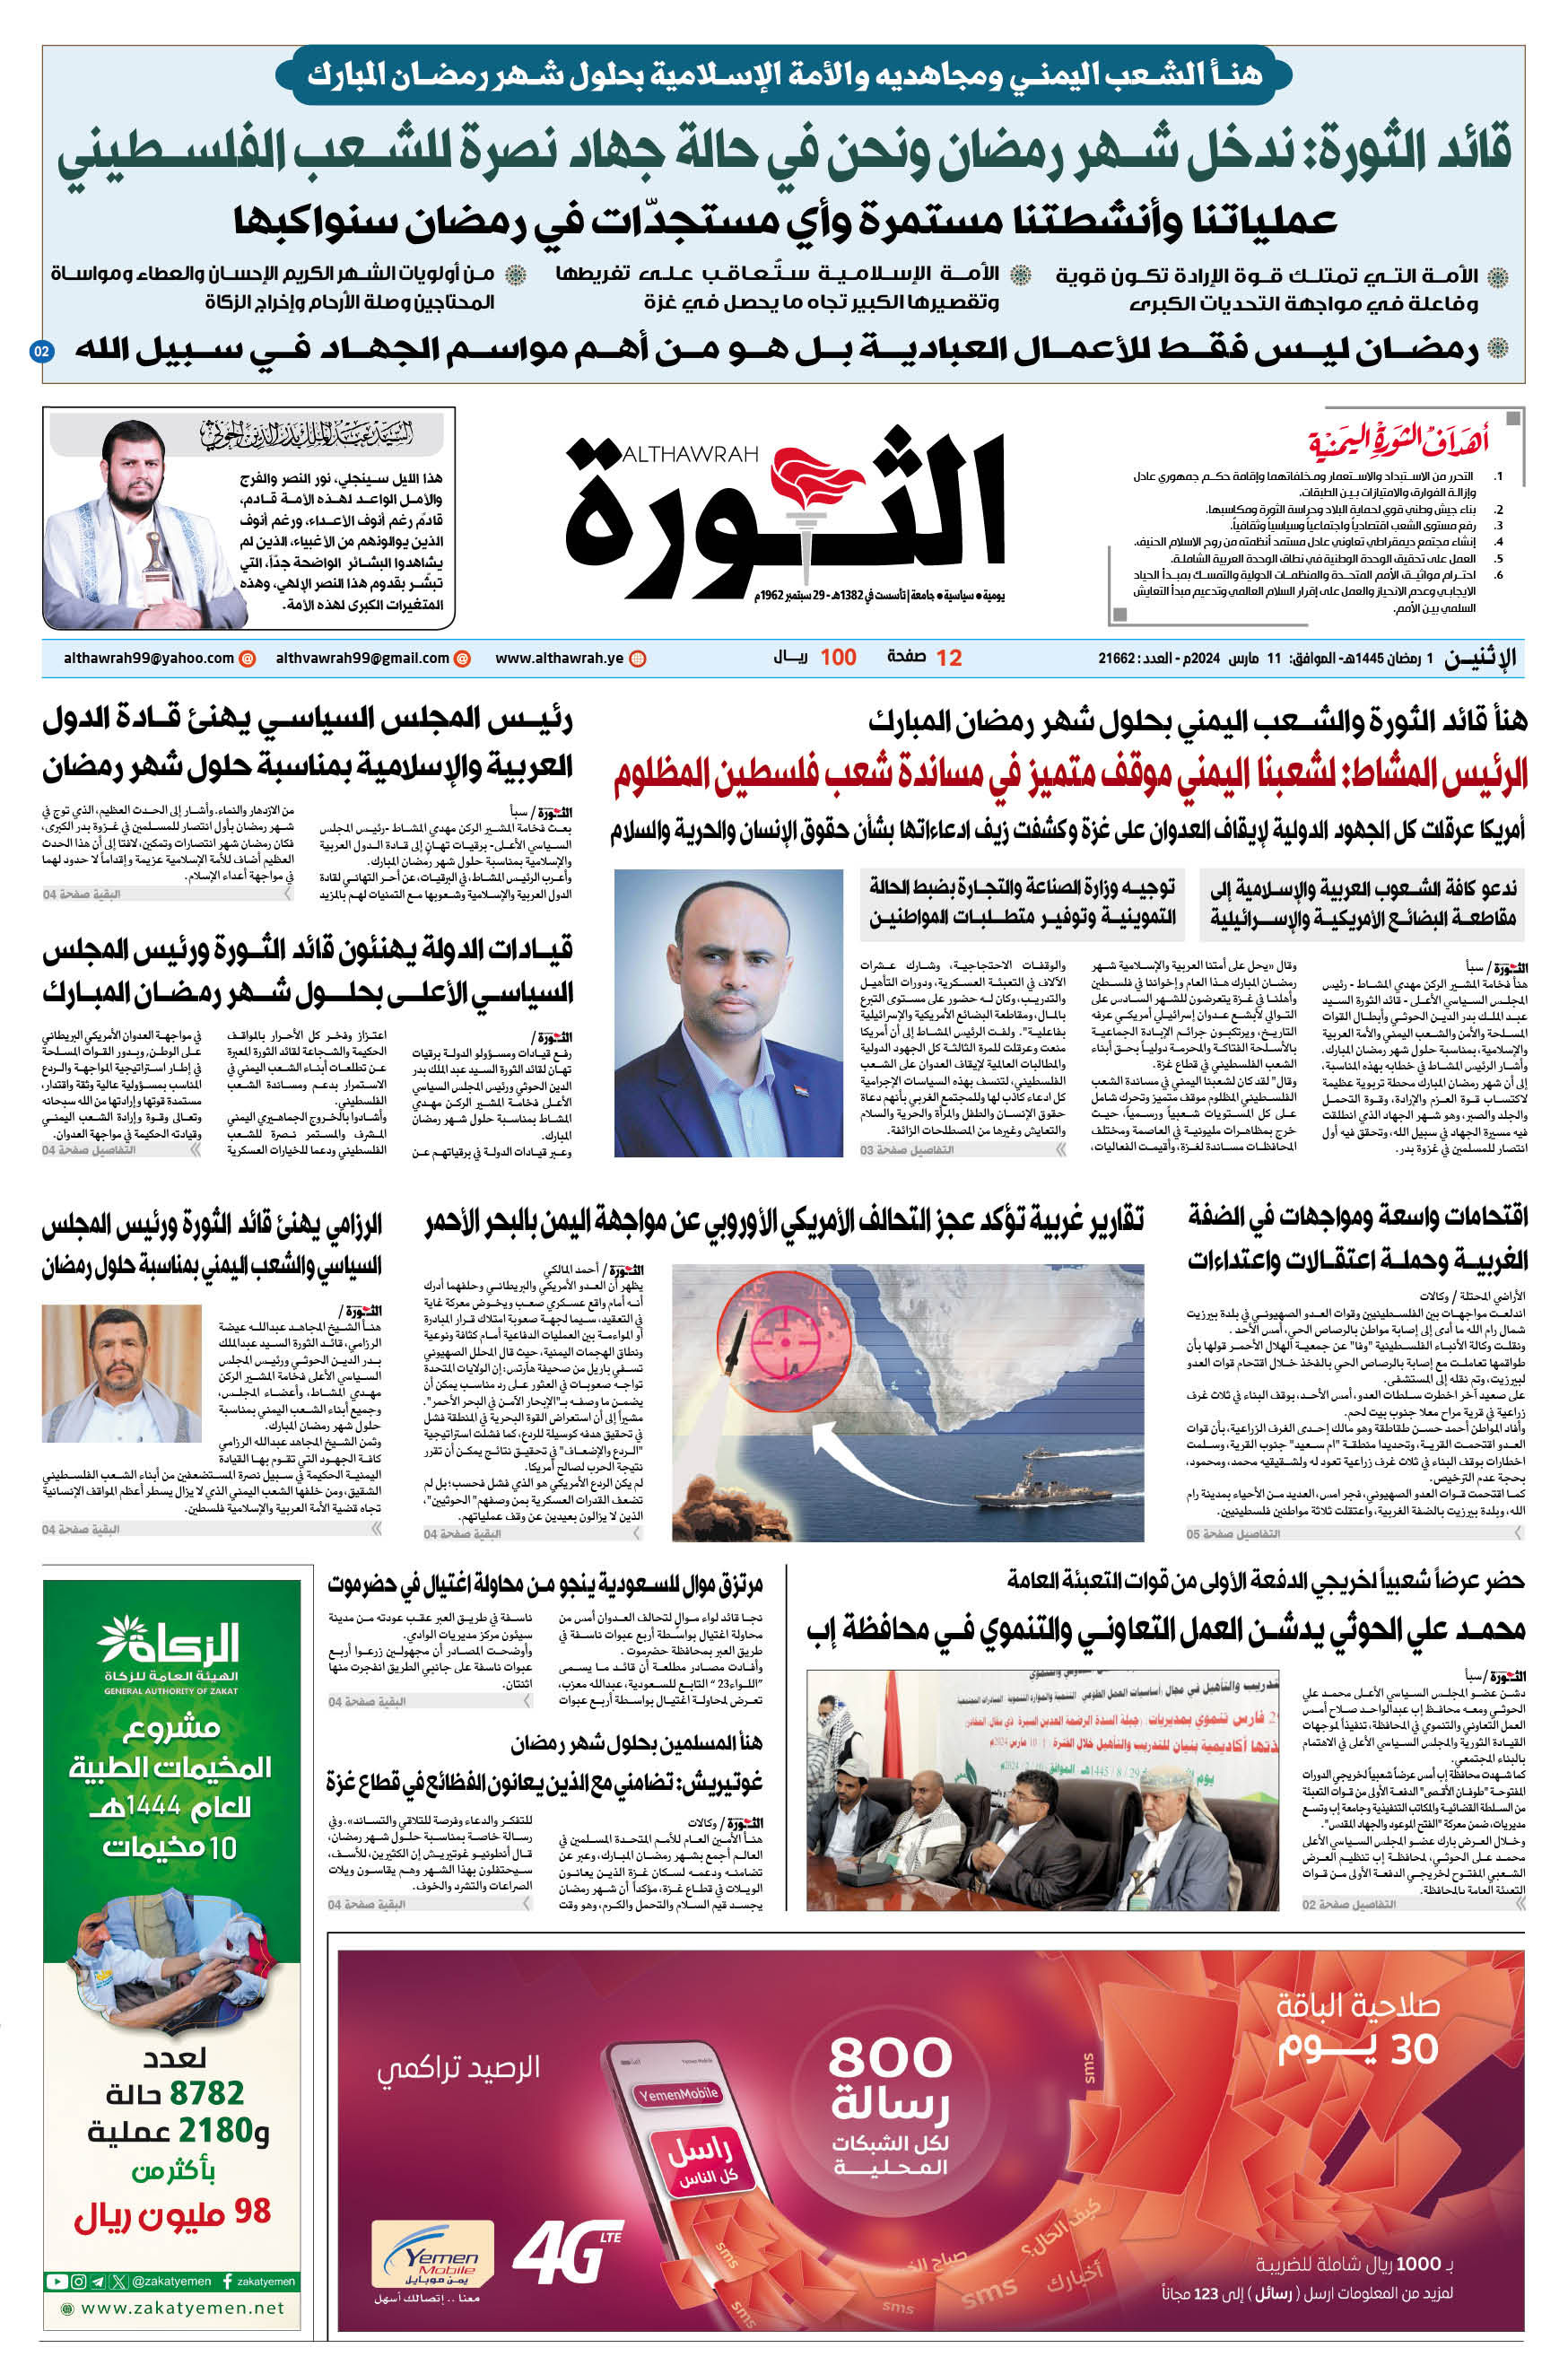 صحيفة الثورة الاثنين 1 رمضان 1445 الموافق 11 مارس 2024